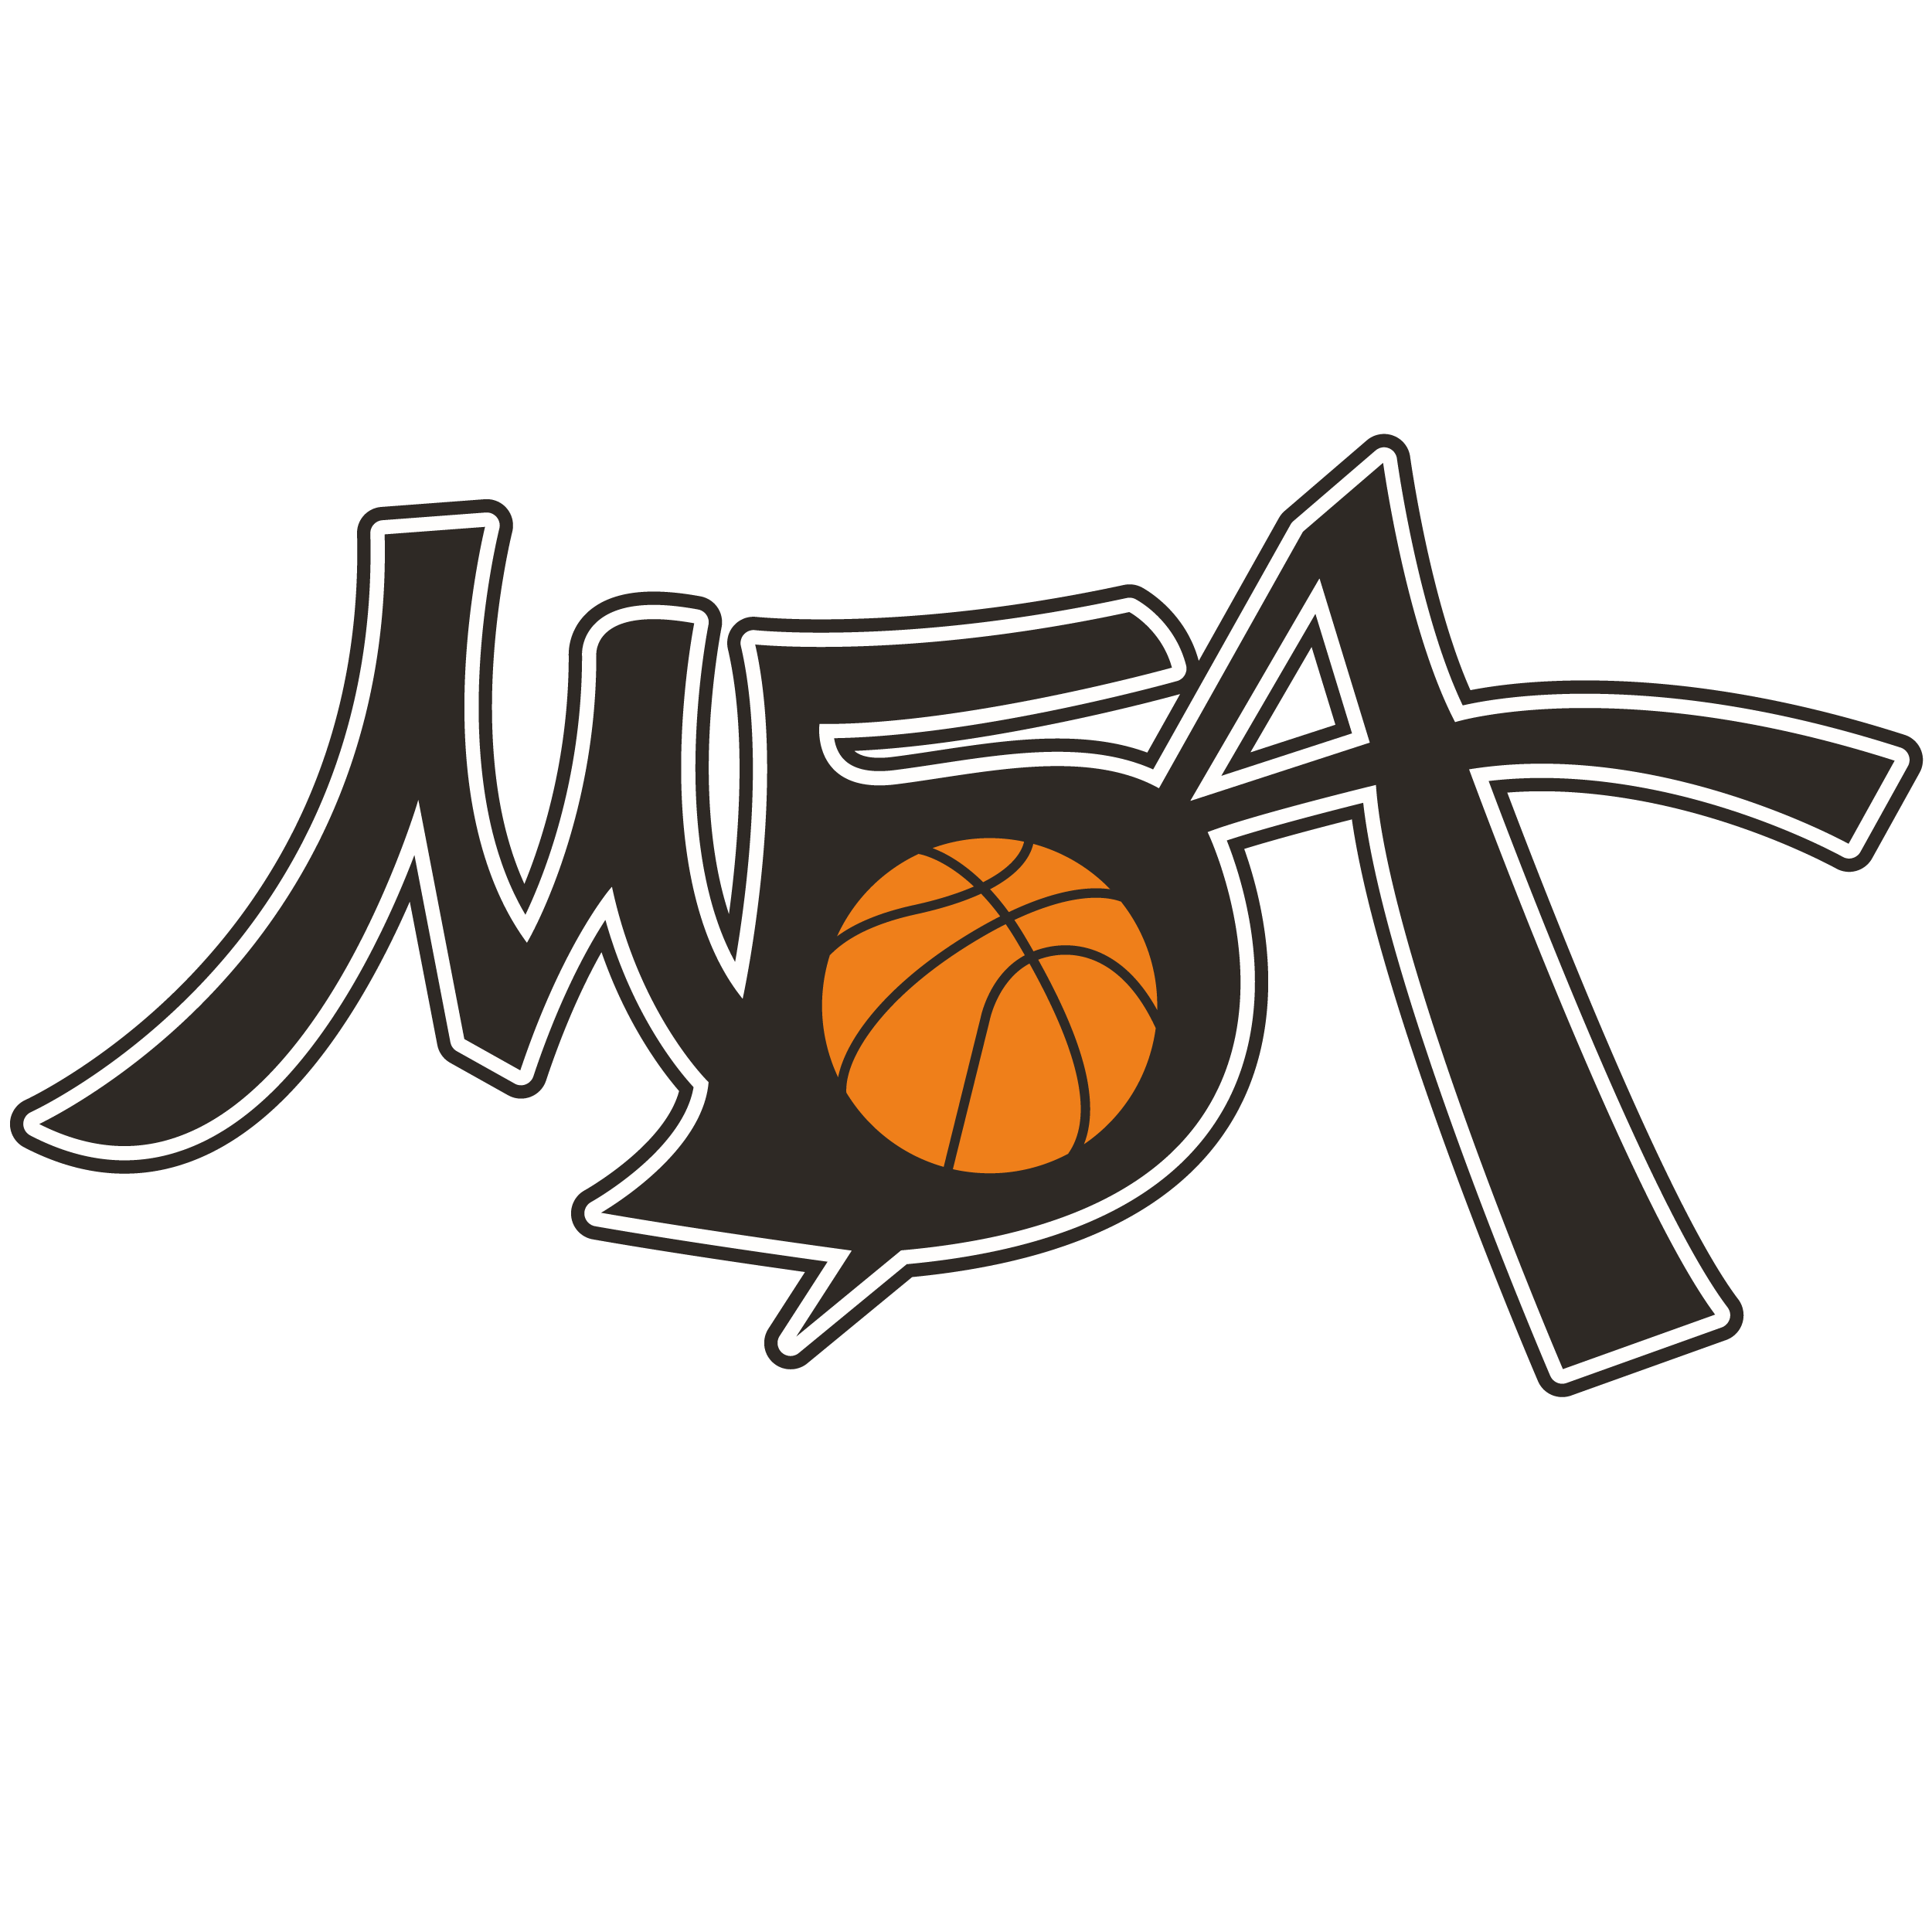 Игры мба баскетбол. Московская баскетбольная Академия МБА. Московская баскетбольная Академия логотип. Баскетбол клуб МБА Москва лого. Эмблема МБА баскетбол.